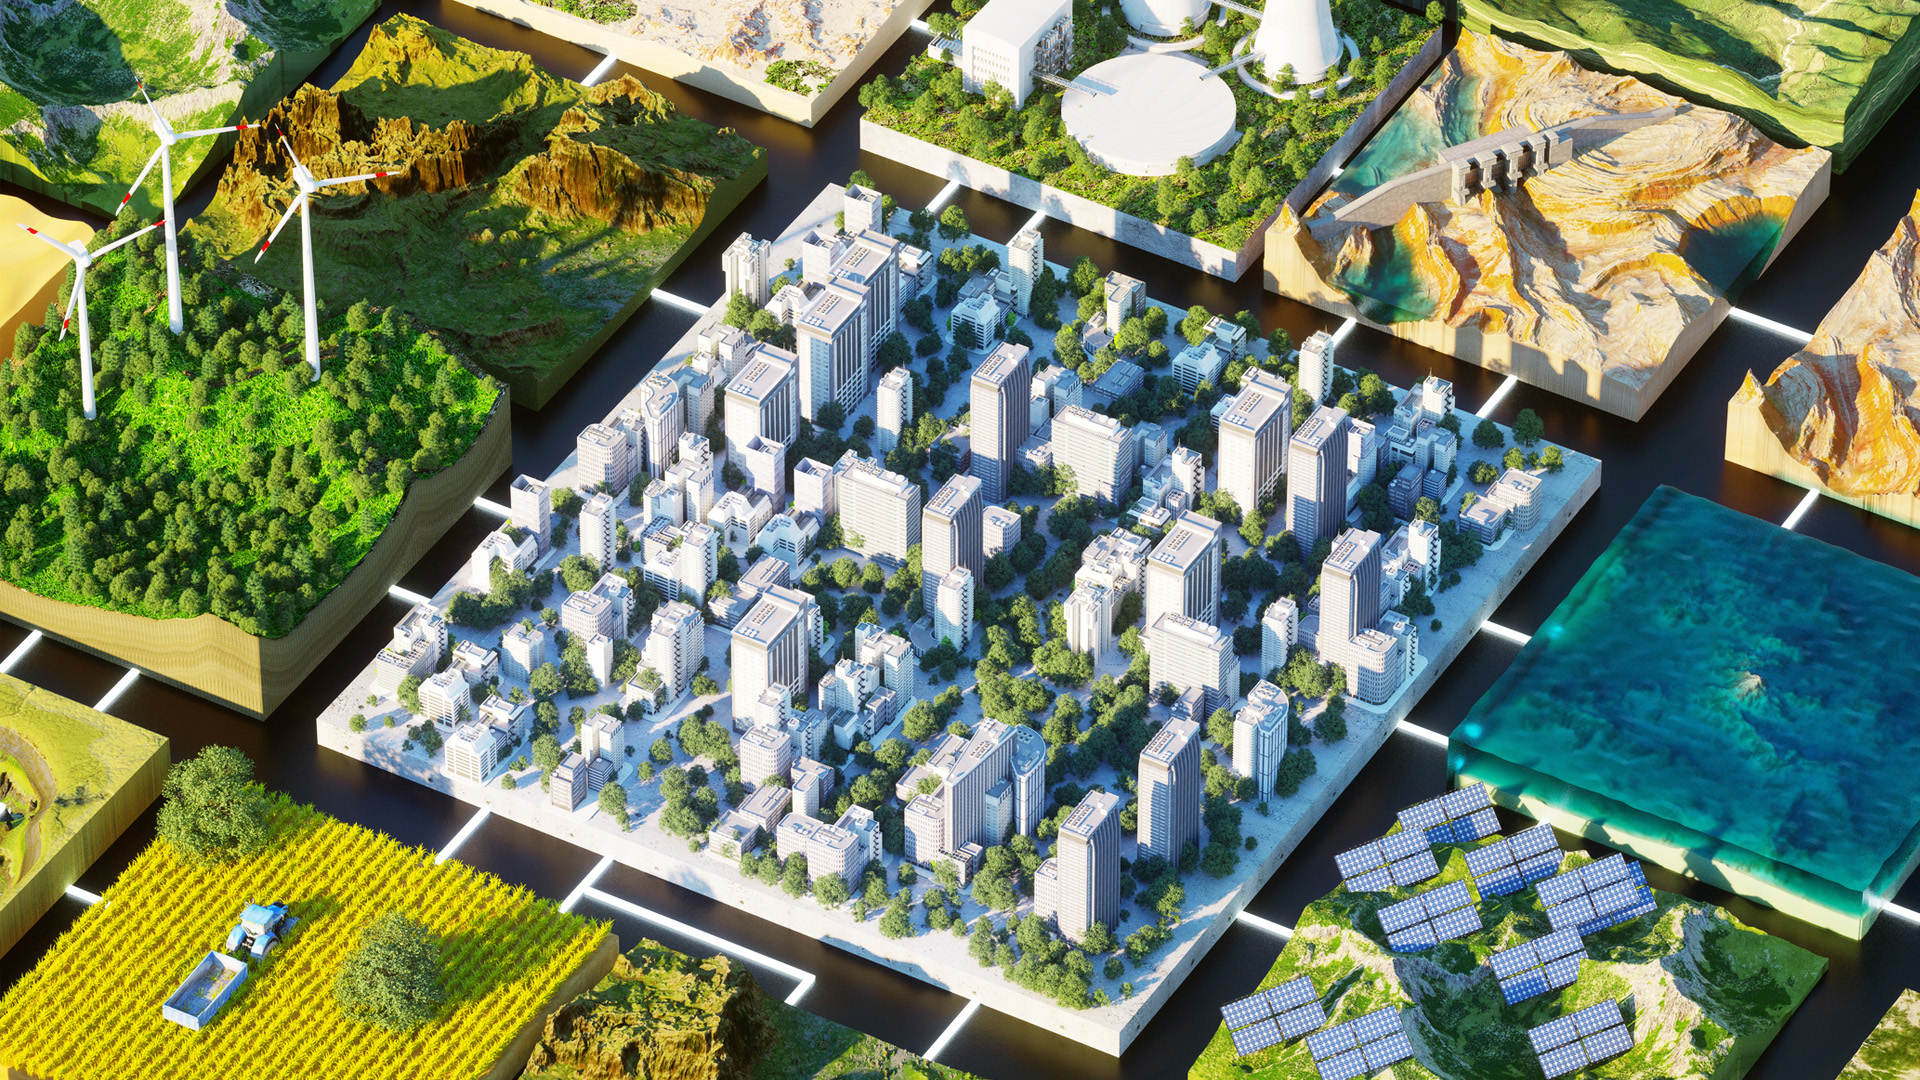 大众电脑运用AIoT技术打造绿色智慧建筑/楼宇